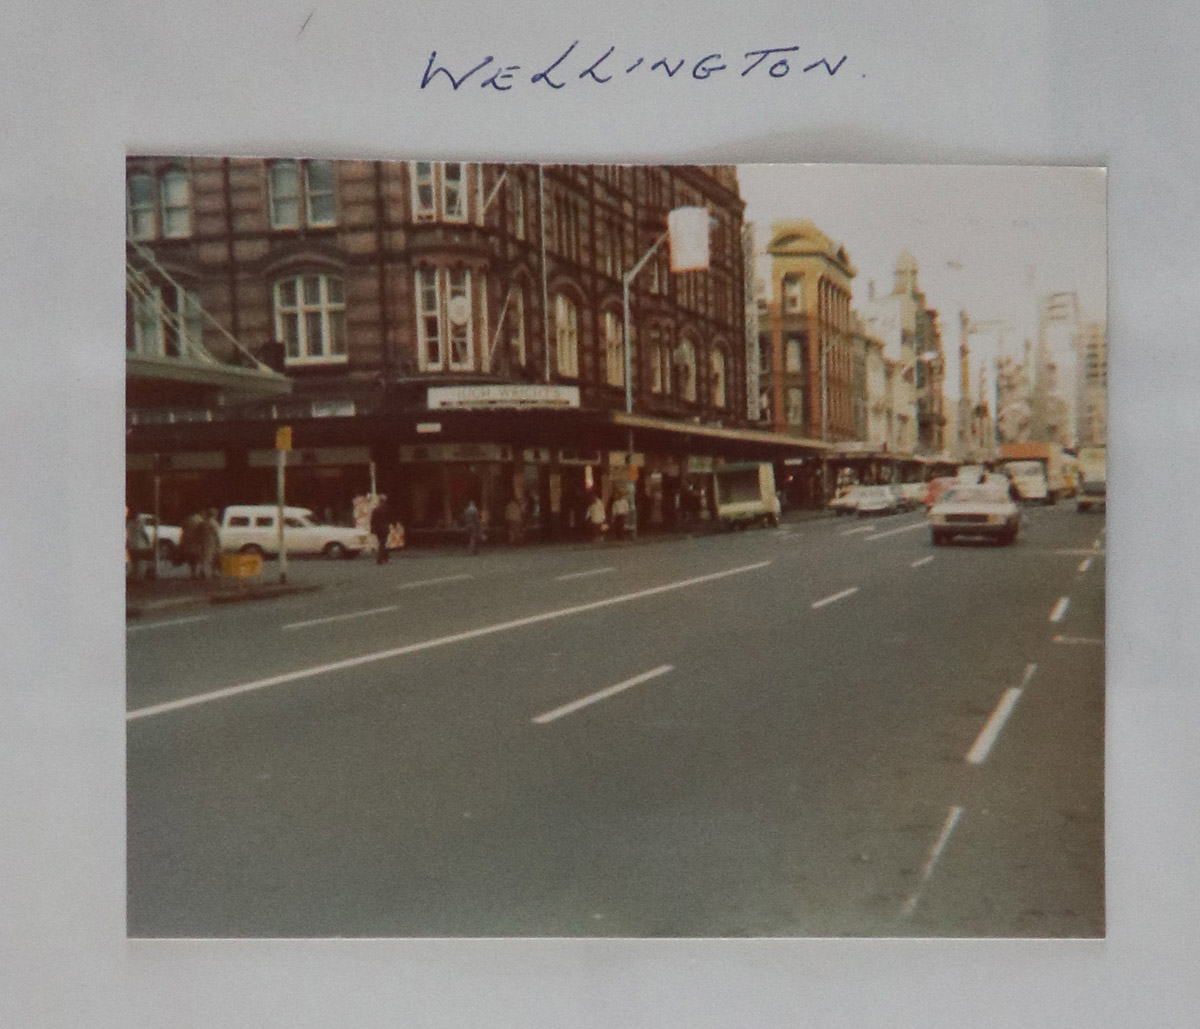 Wellington - New Zealand, World Tour 1976